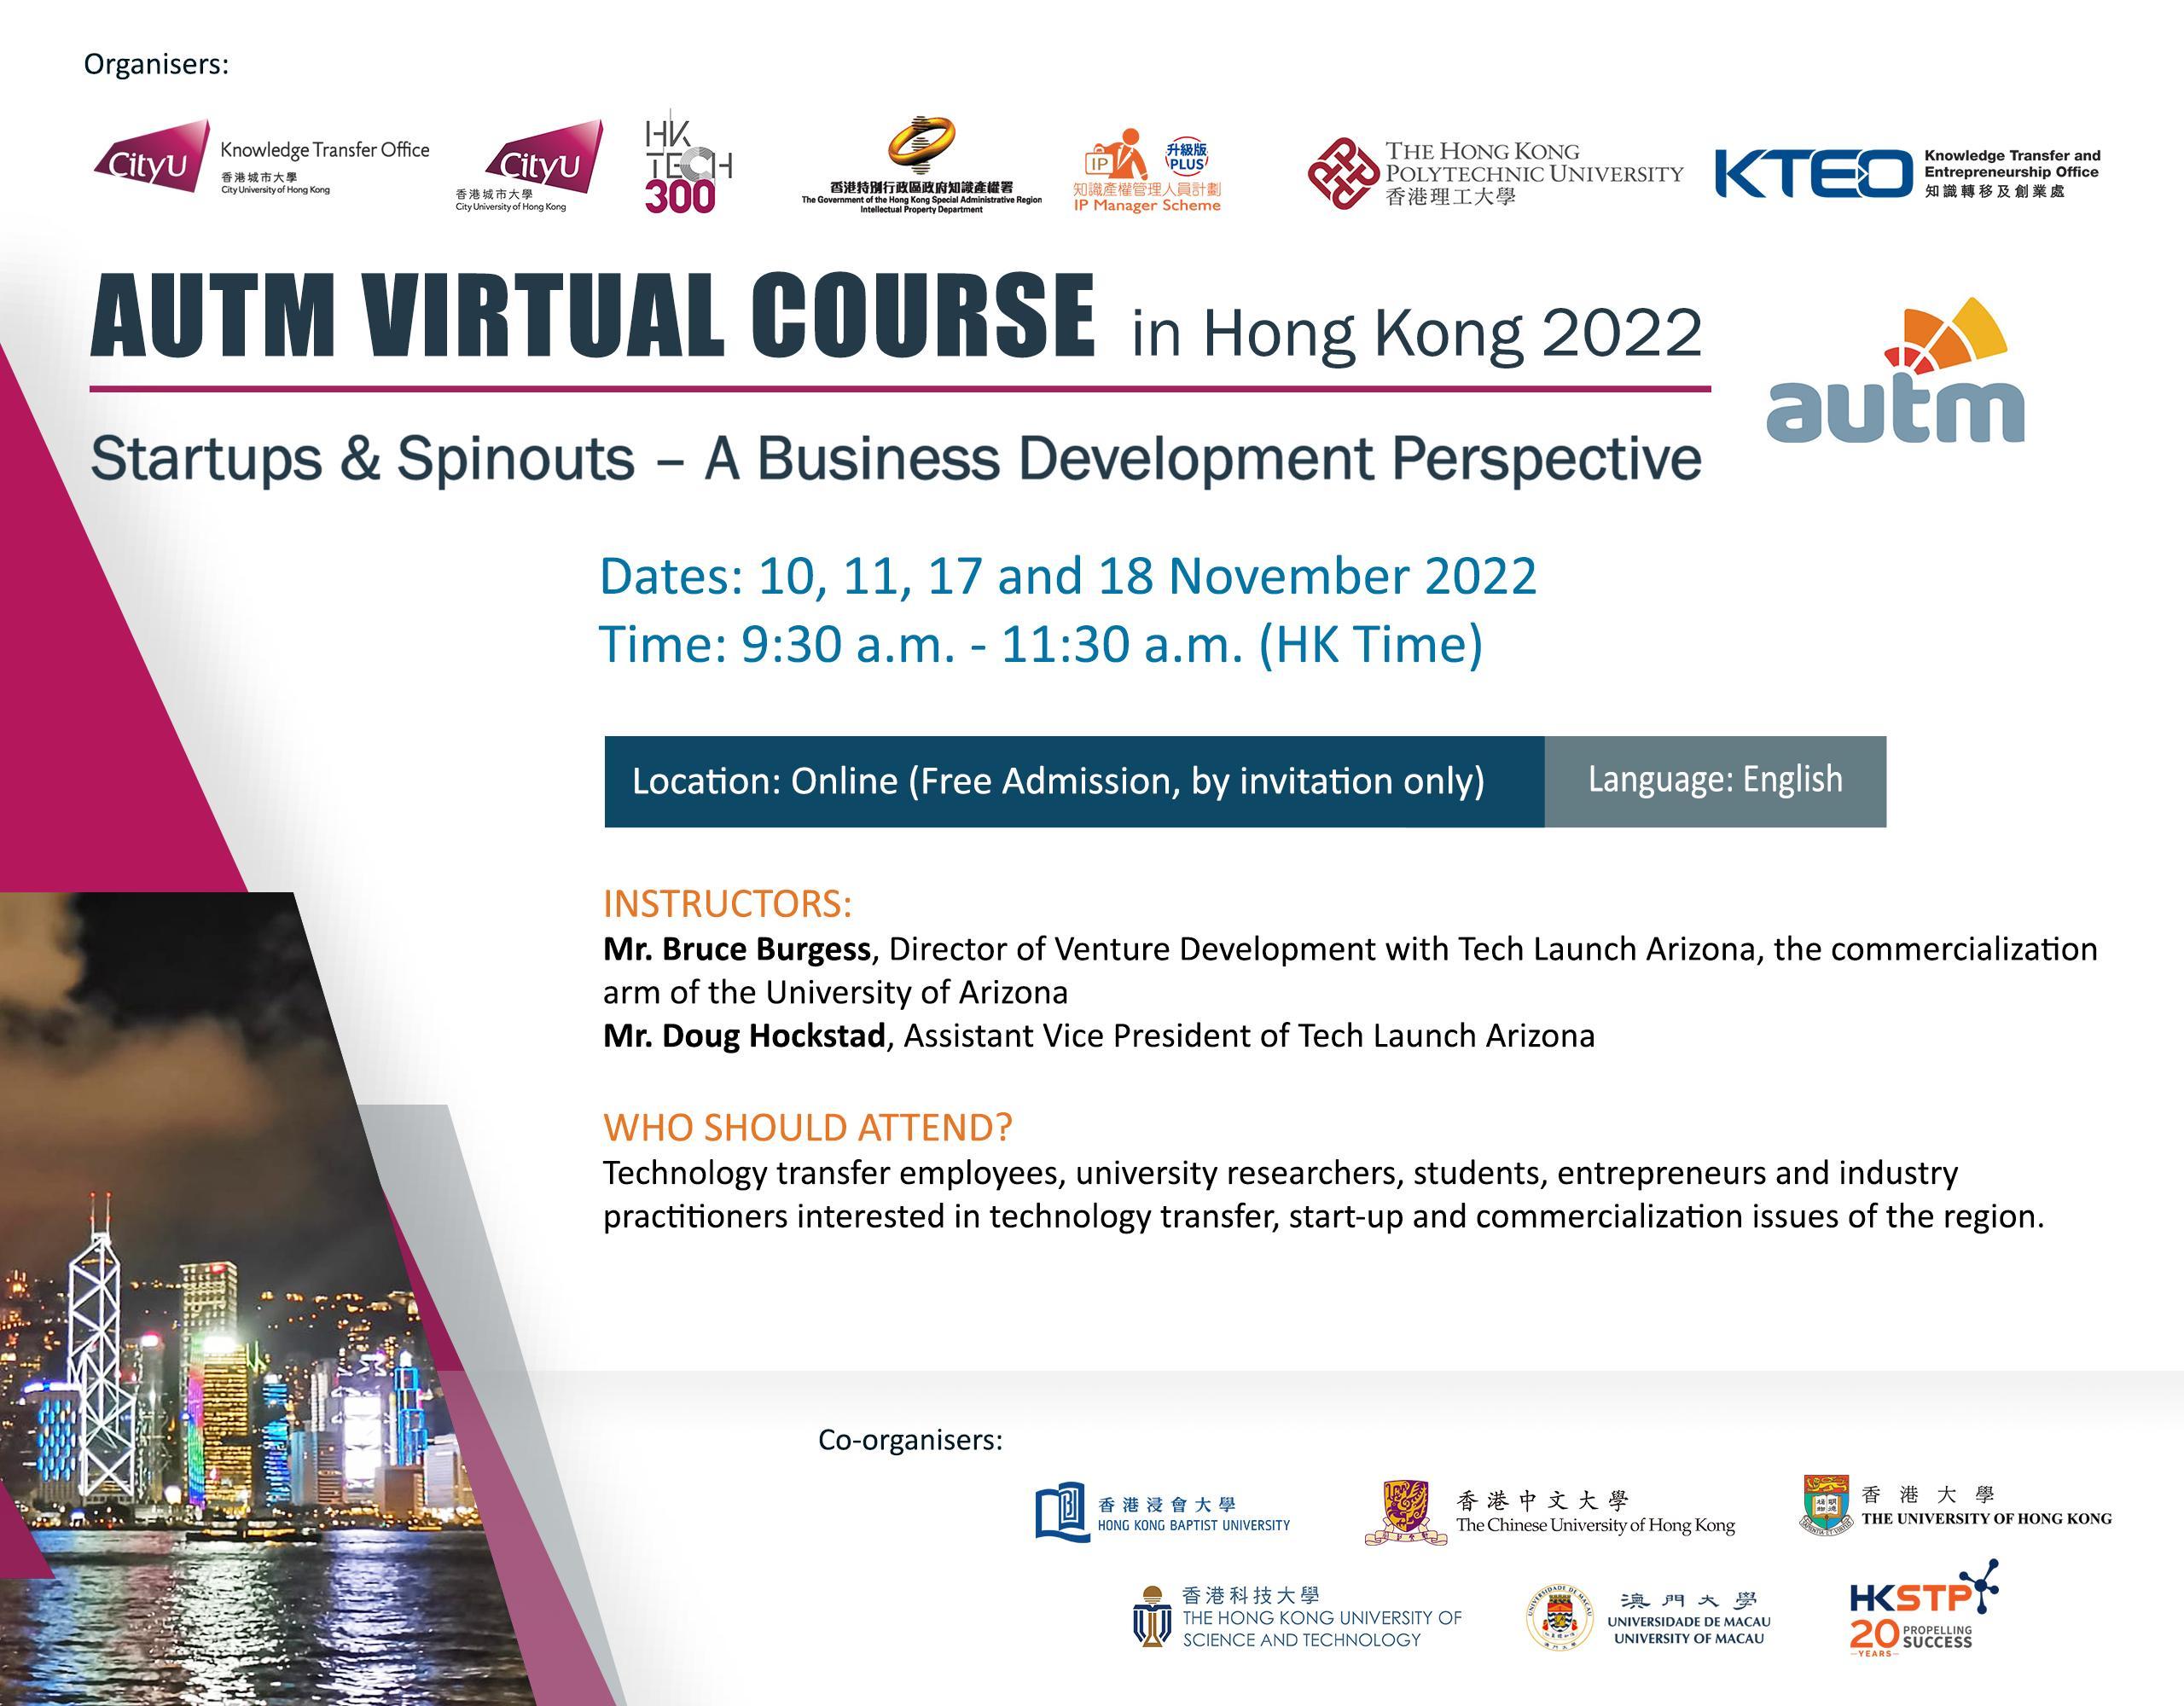 AUTM Virtual Course in Hong Kong 2022 